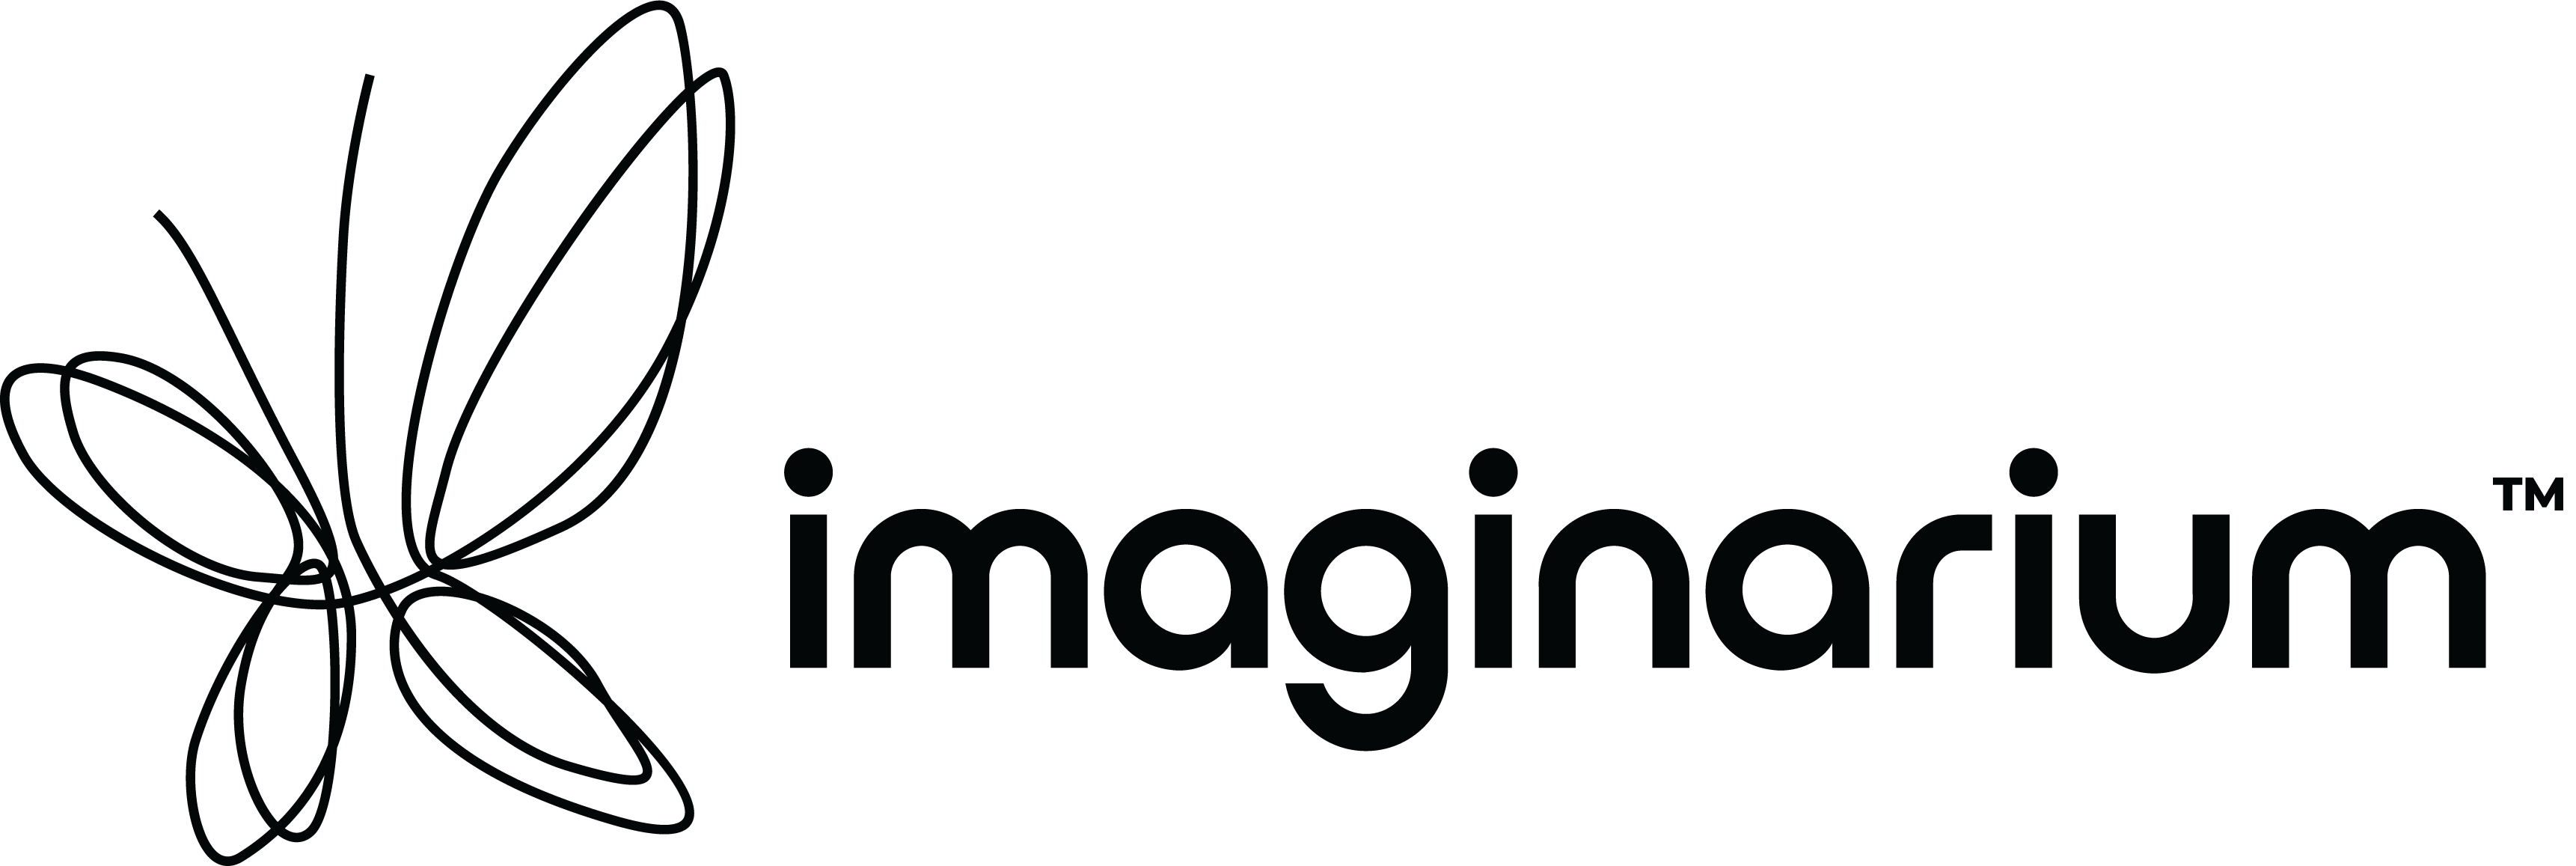 Imaginarium - 3D printing services